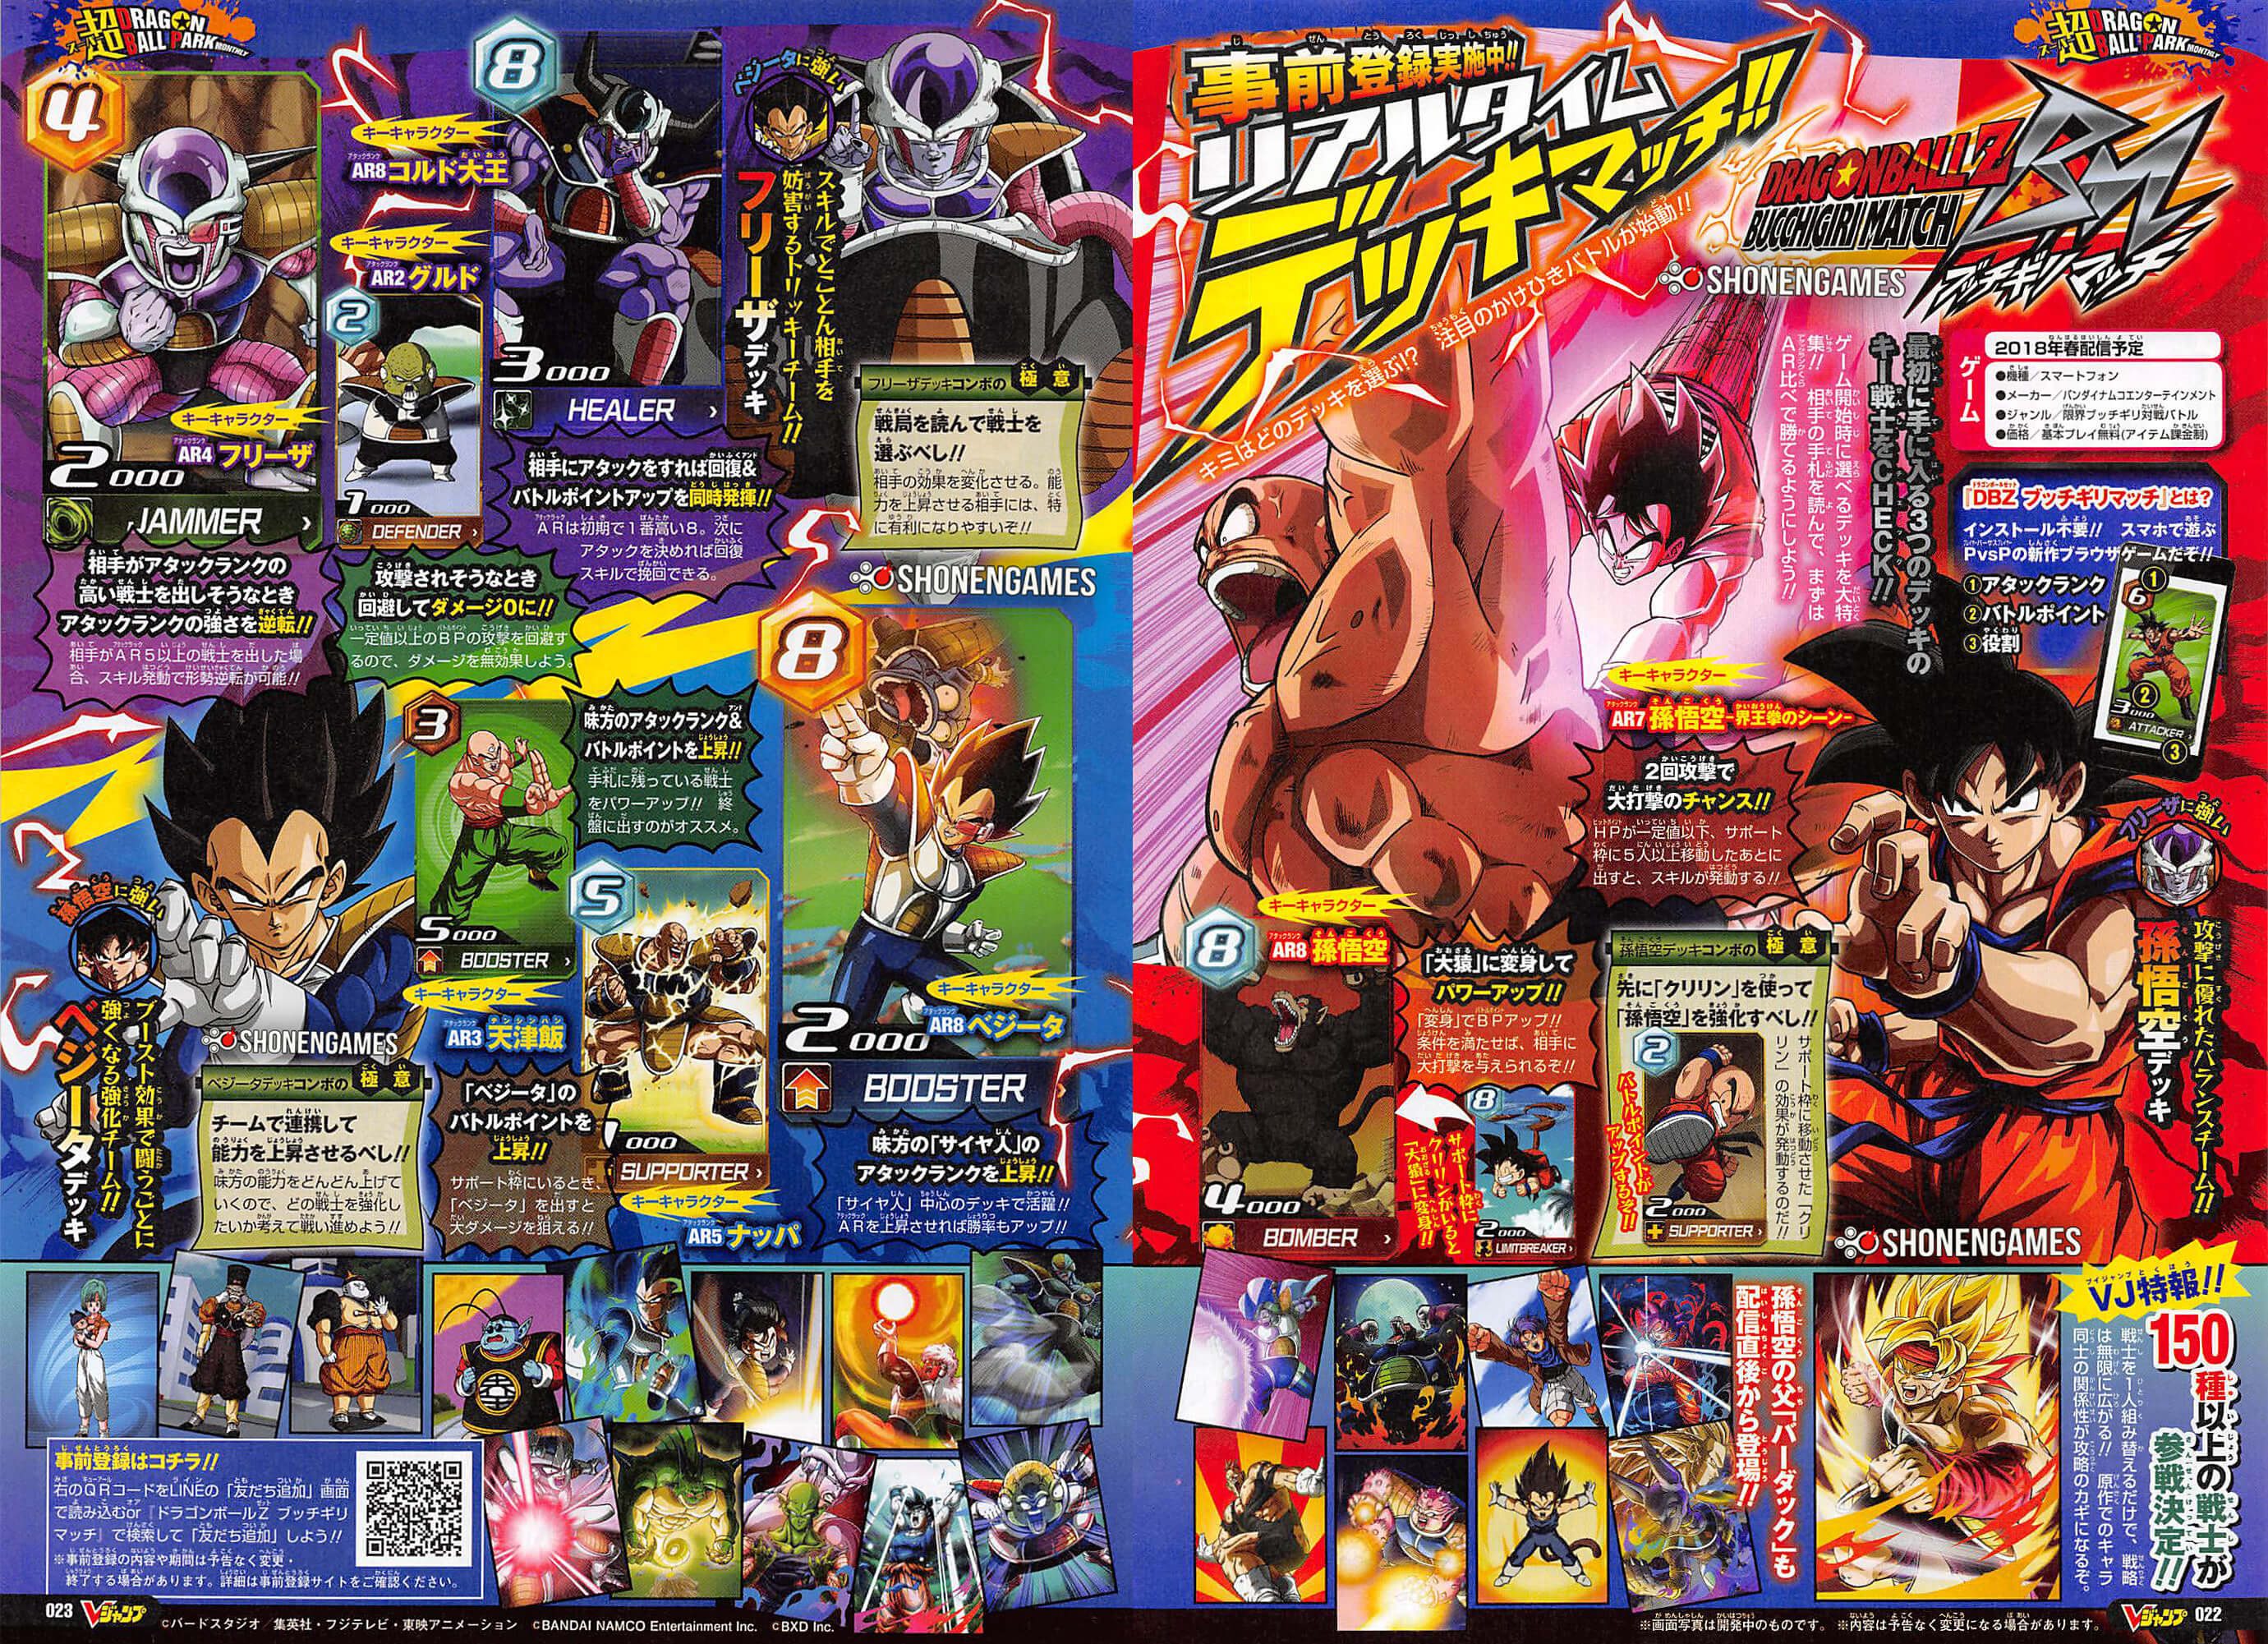 Dragon Ball Z Bucchigiri Match (lost web-based card game based on